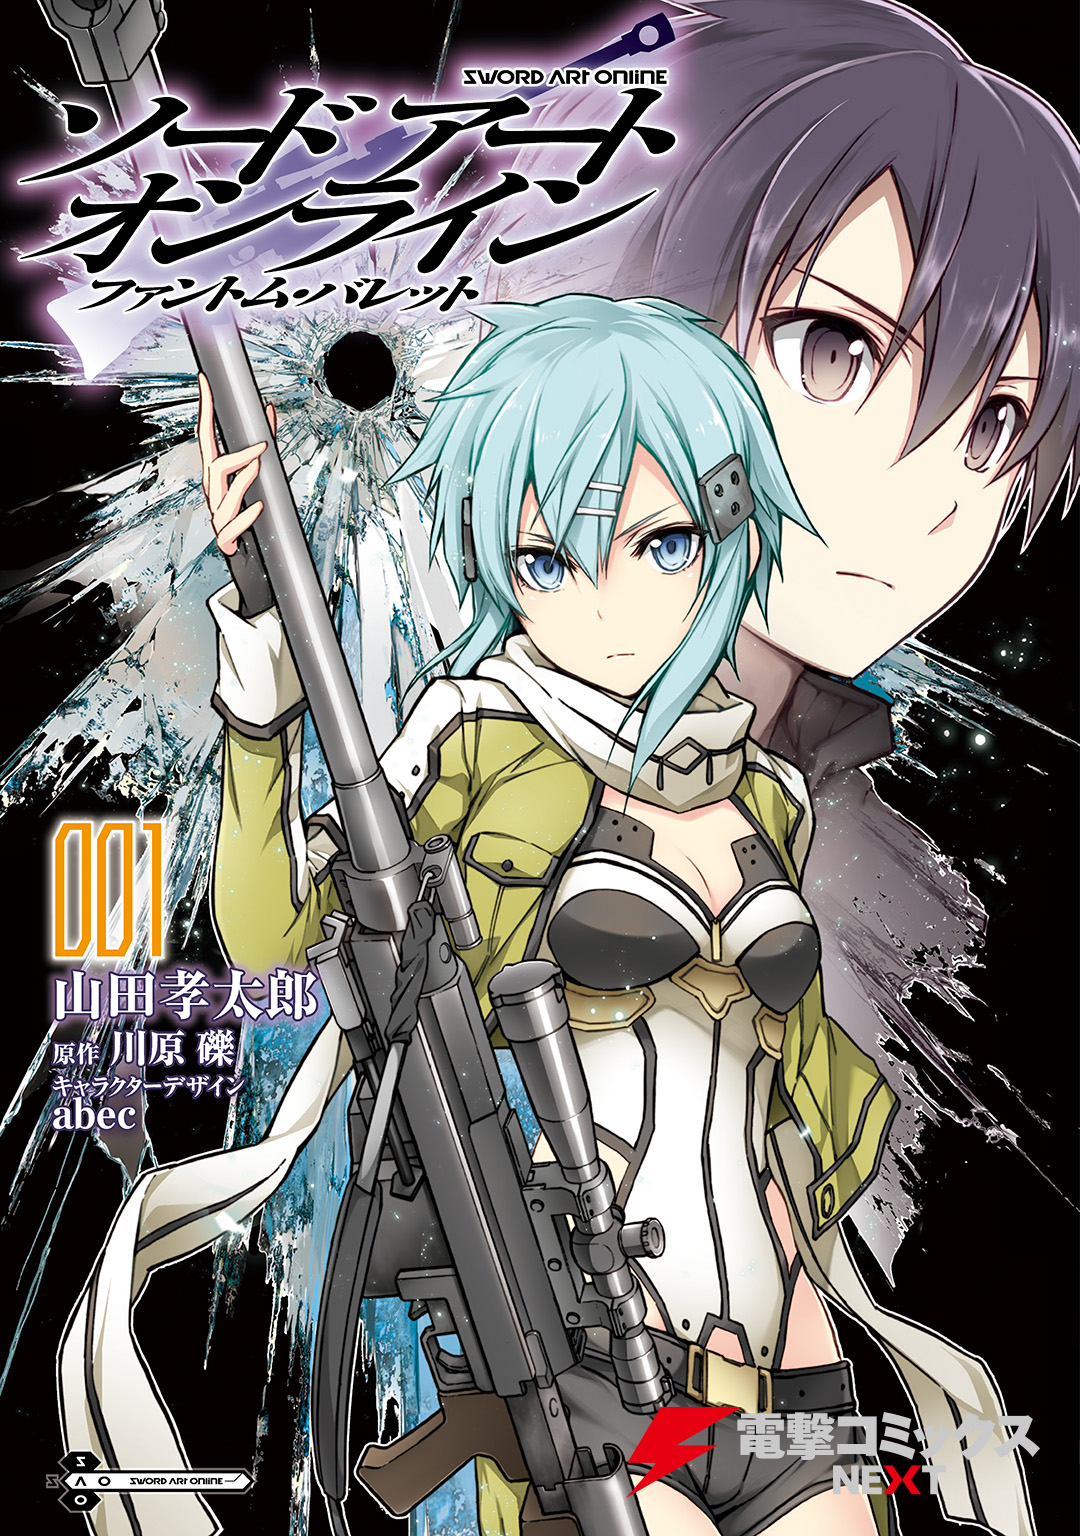 Sword Art Online Phantom Bullet Volume 01 Manga Sword Art Online Wiki Fandom